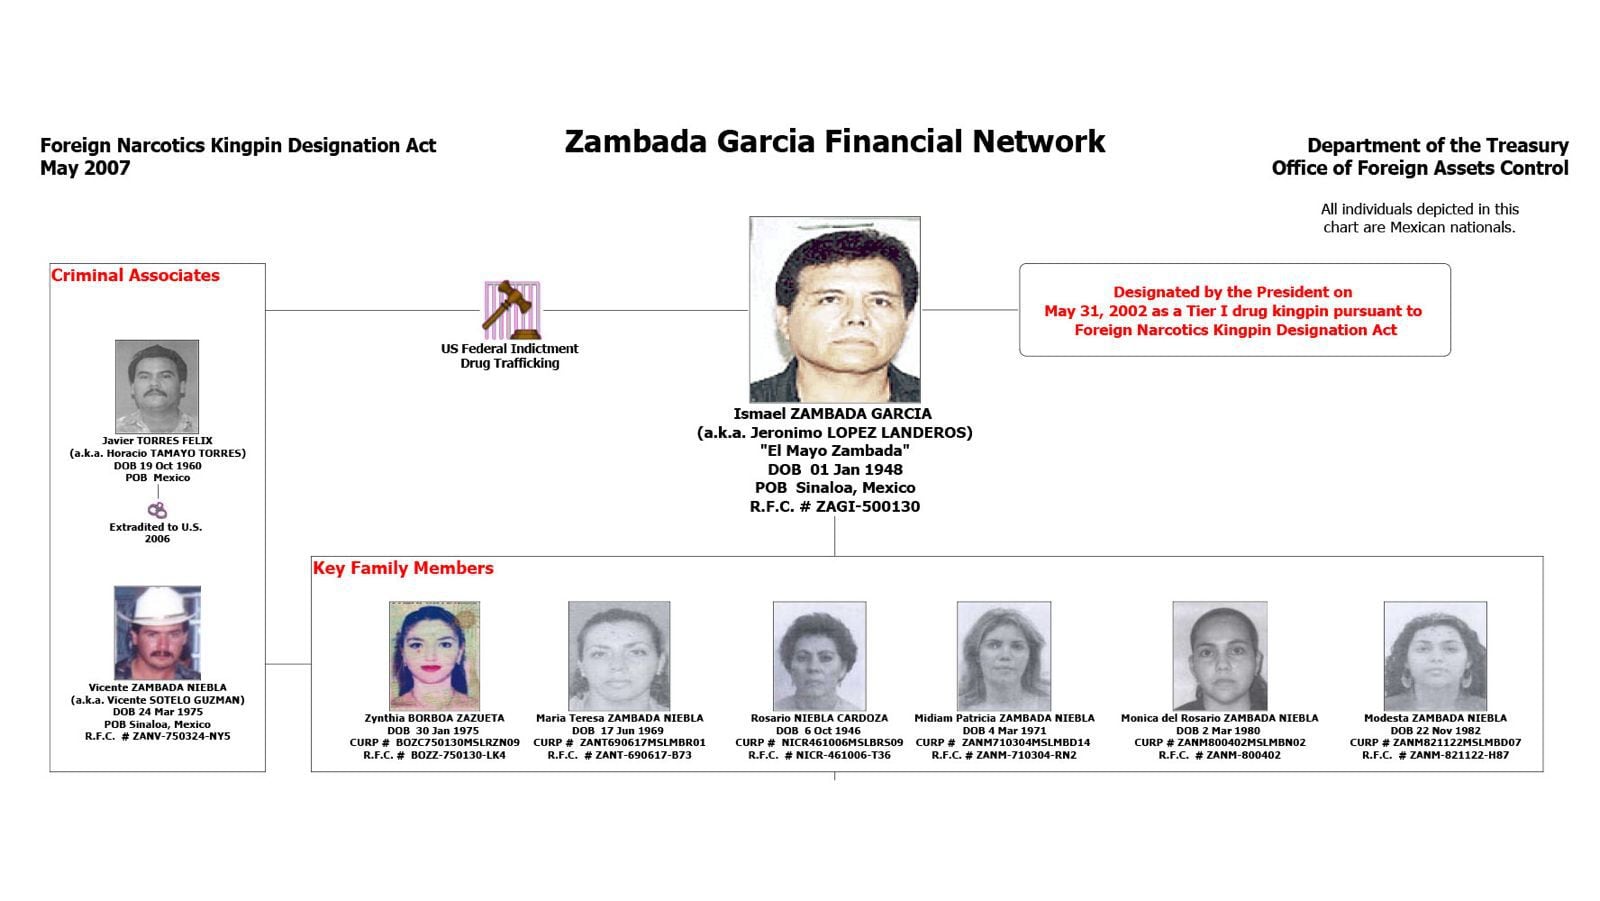 Criminales asociados y familiares clave del 'Mayo' Zambada. (Foto: Departamento del Tesoro de EU) 